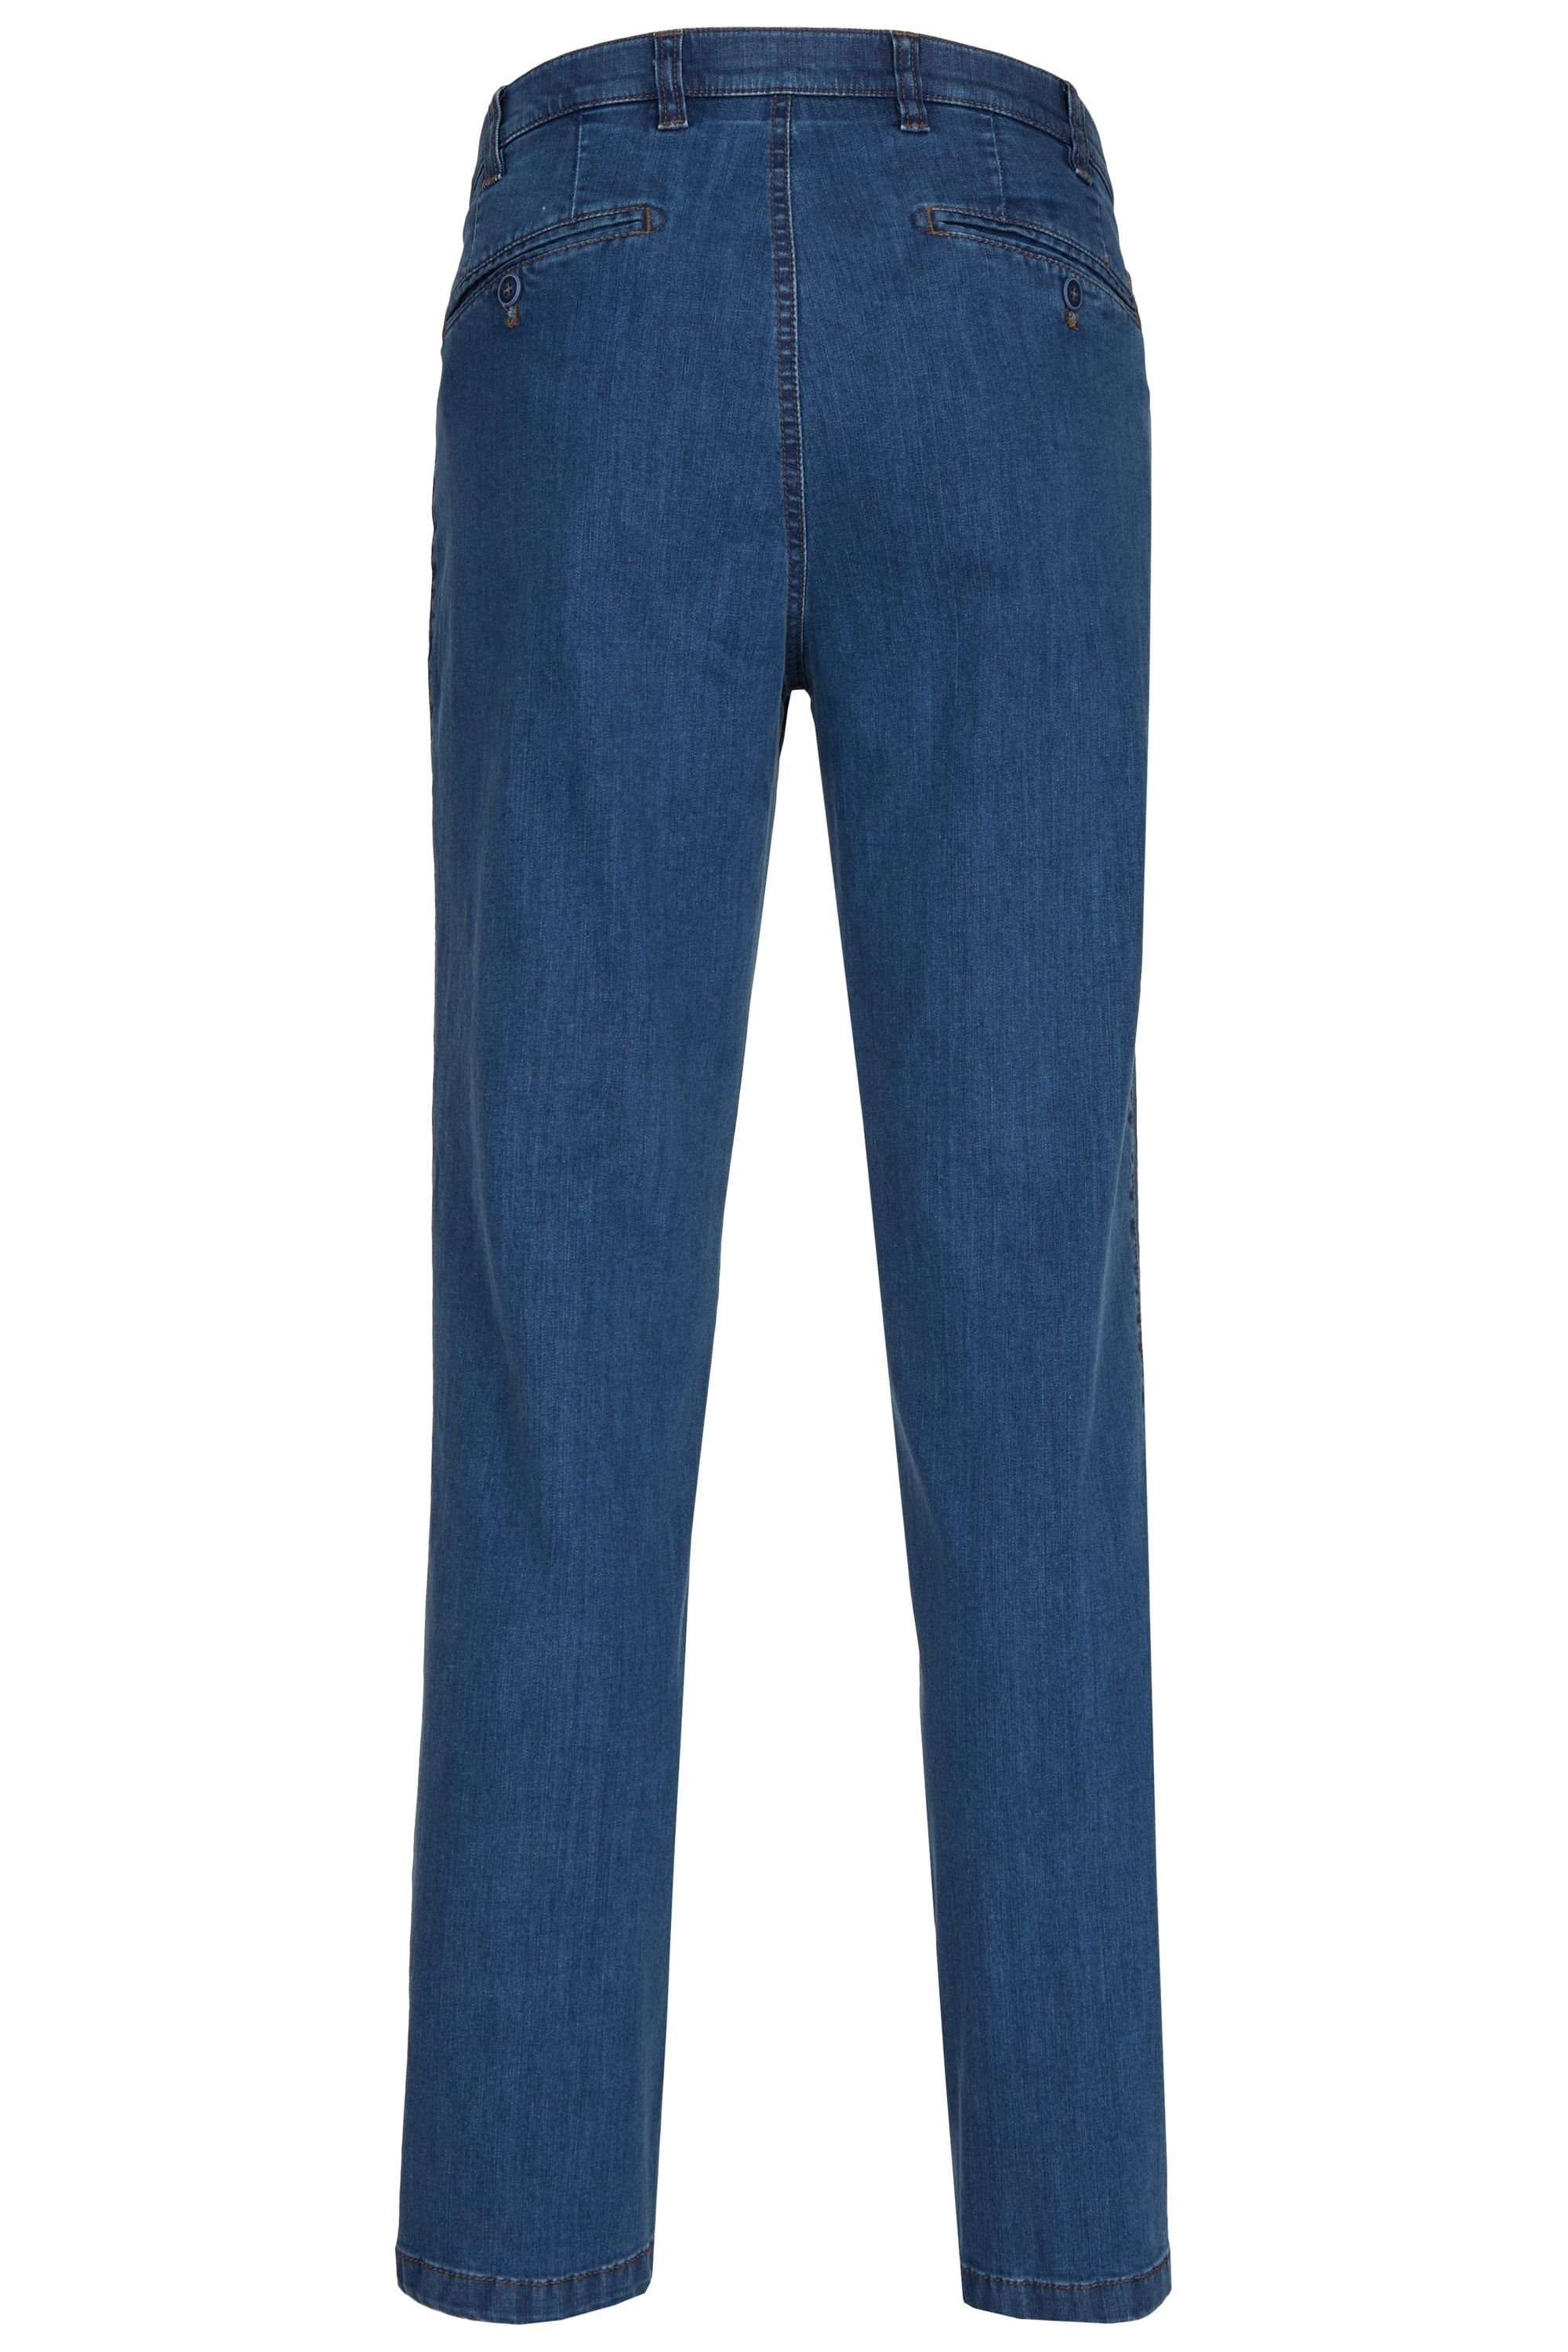 High Jeans Fit 577 Flex stone Modell Bequeme aus aubi: Hose Baumwolle Herren Perfect Sommer Jeans aubi (46) Stretch